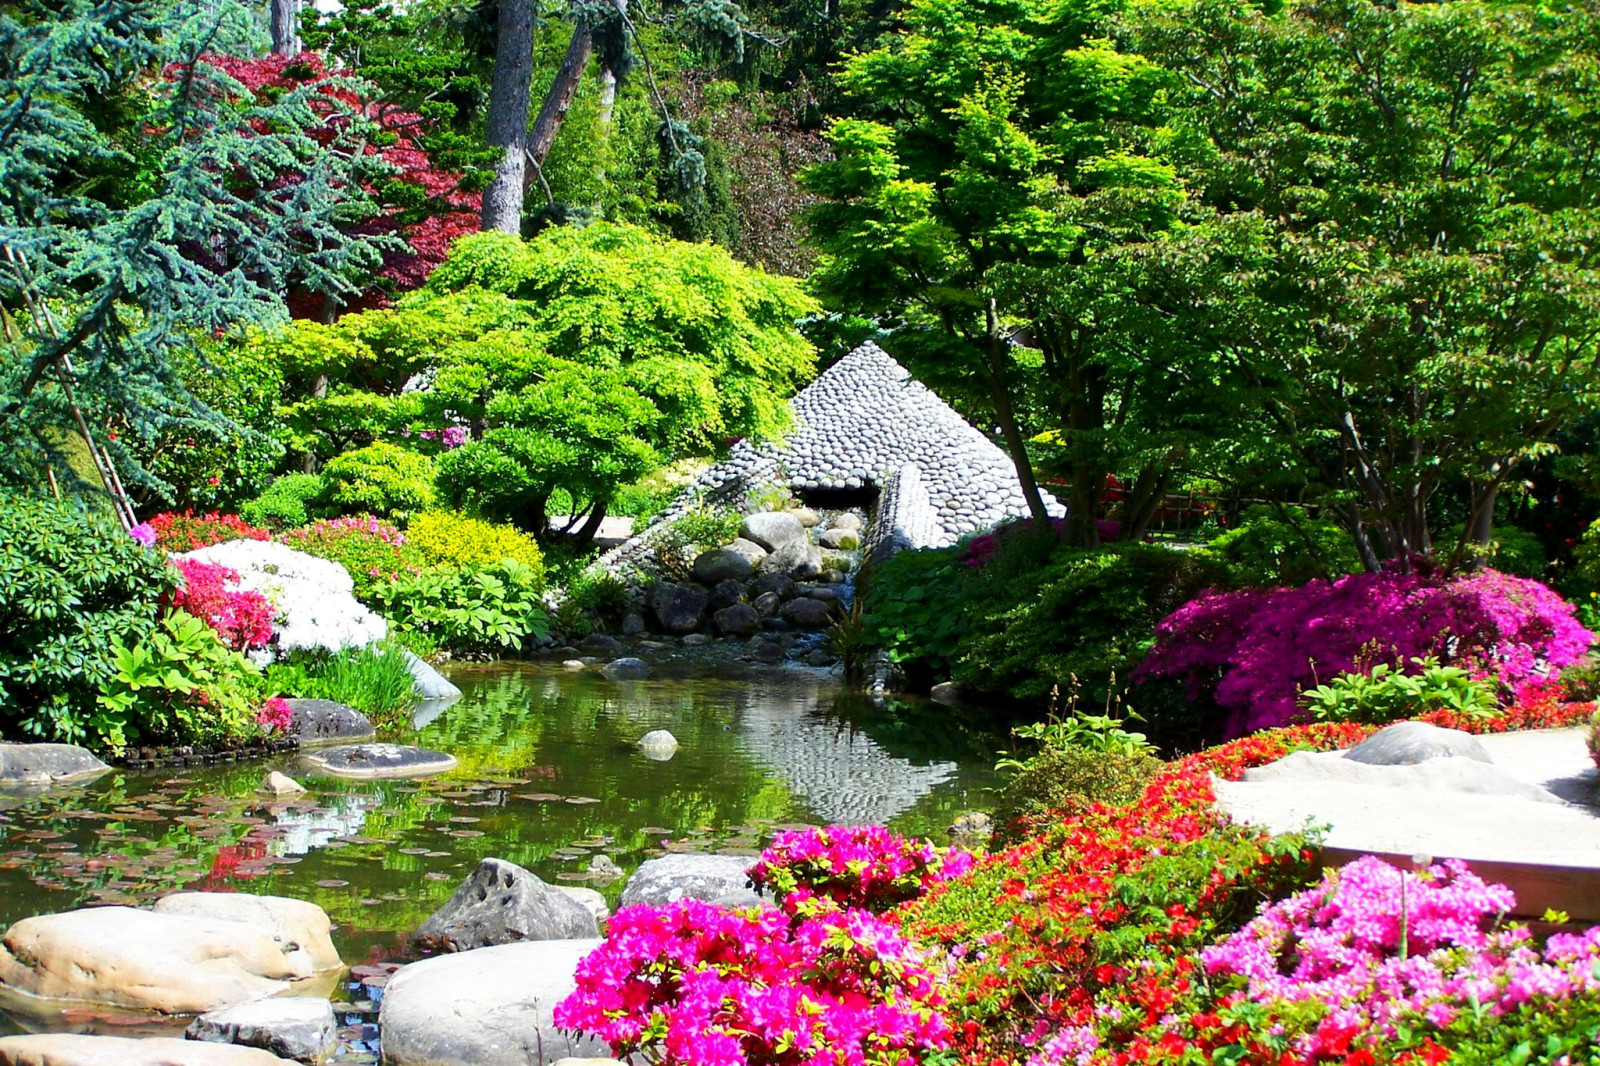 石头, 树木, 花卉, 法国, 池塘, 花园, 灌木丛, 阿尔伯特·卡恩日本花园